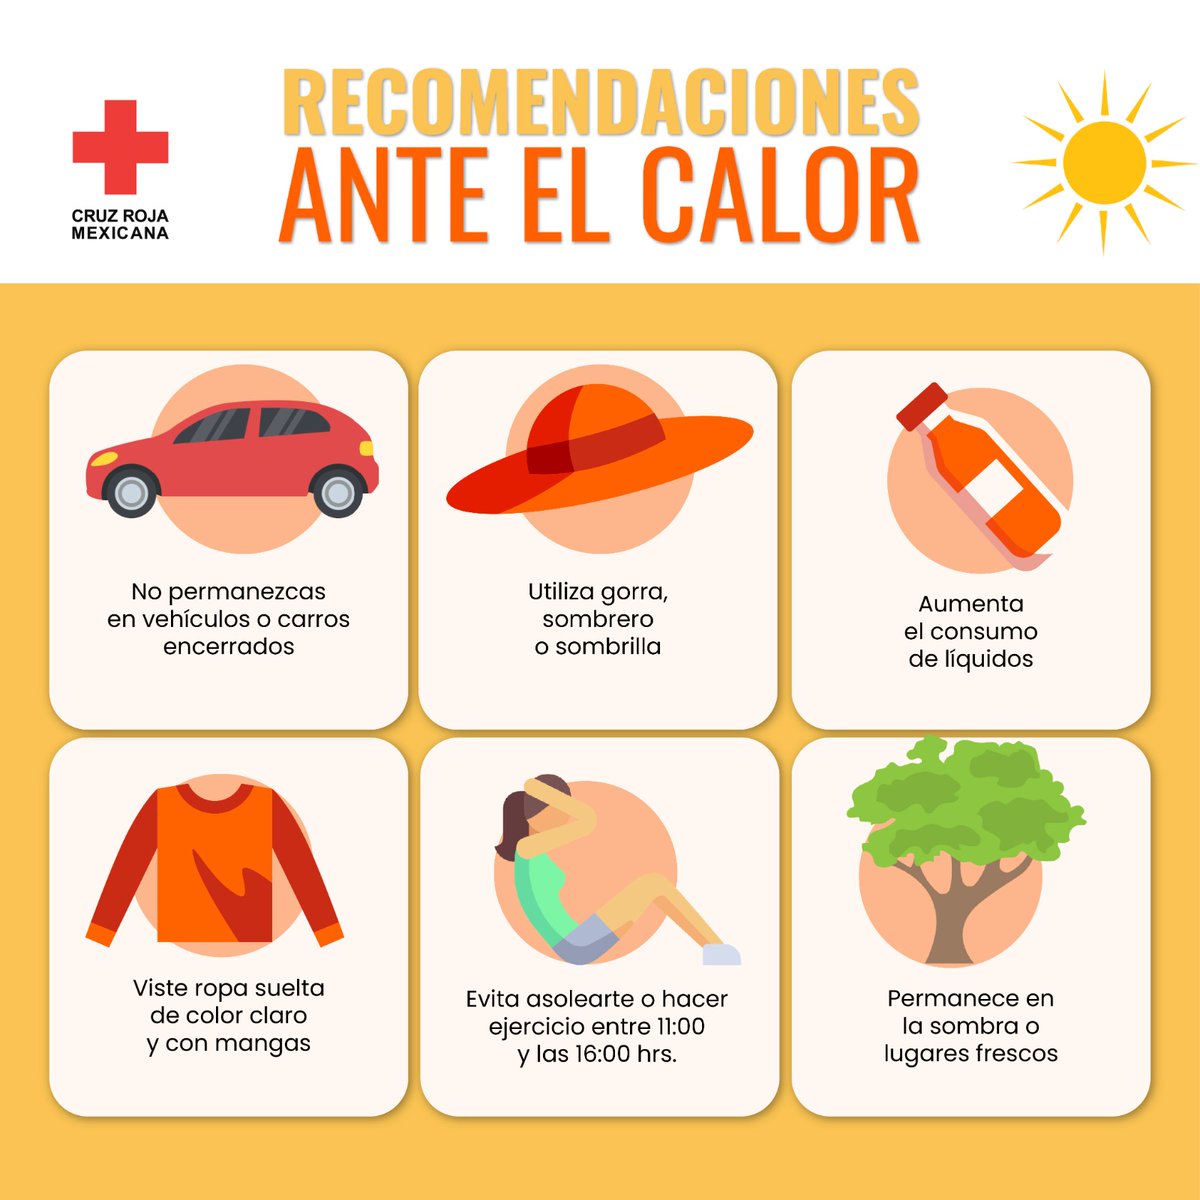 De acuerdo con @CNPC_MX, las #OndasDeCalor ☀️ continuarán en gran parte de la República Mexicana. Te compartimos algunas recomendaciones para evitar agotamiento de calor o #GolpeDeCalor. ¡Prevenir es vivir!